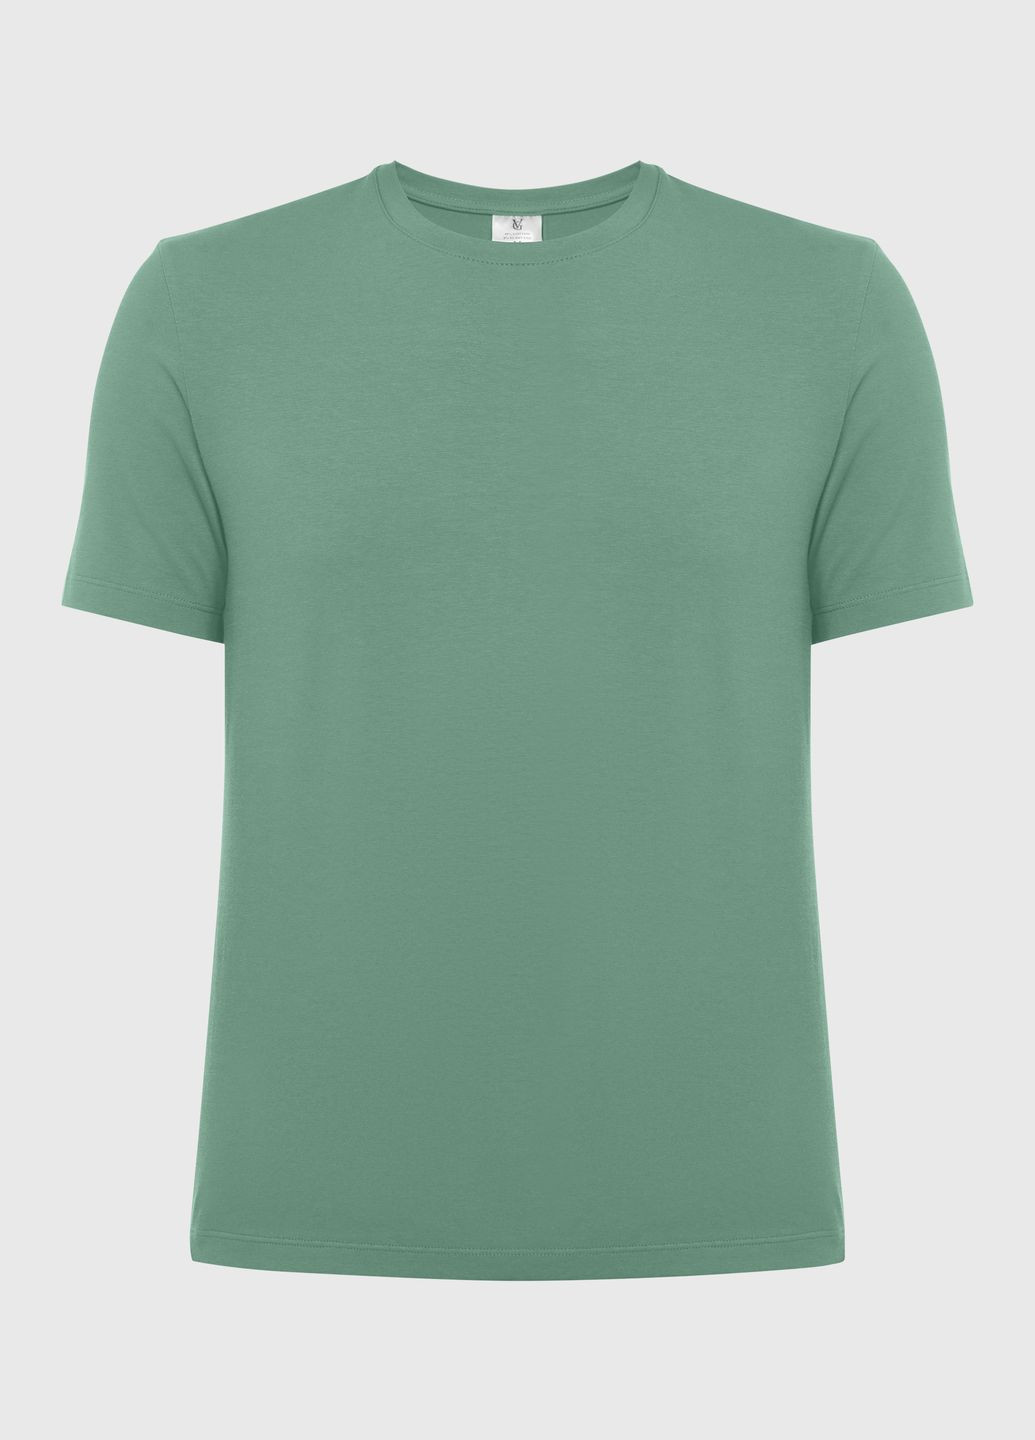 Зеленая футболка мужская базовая, цвет зеленый German Volf